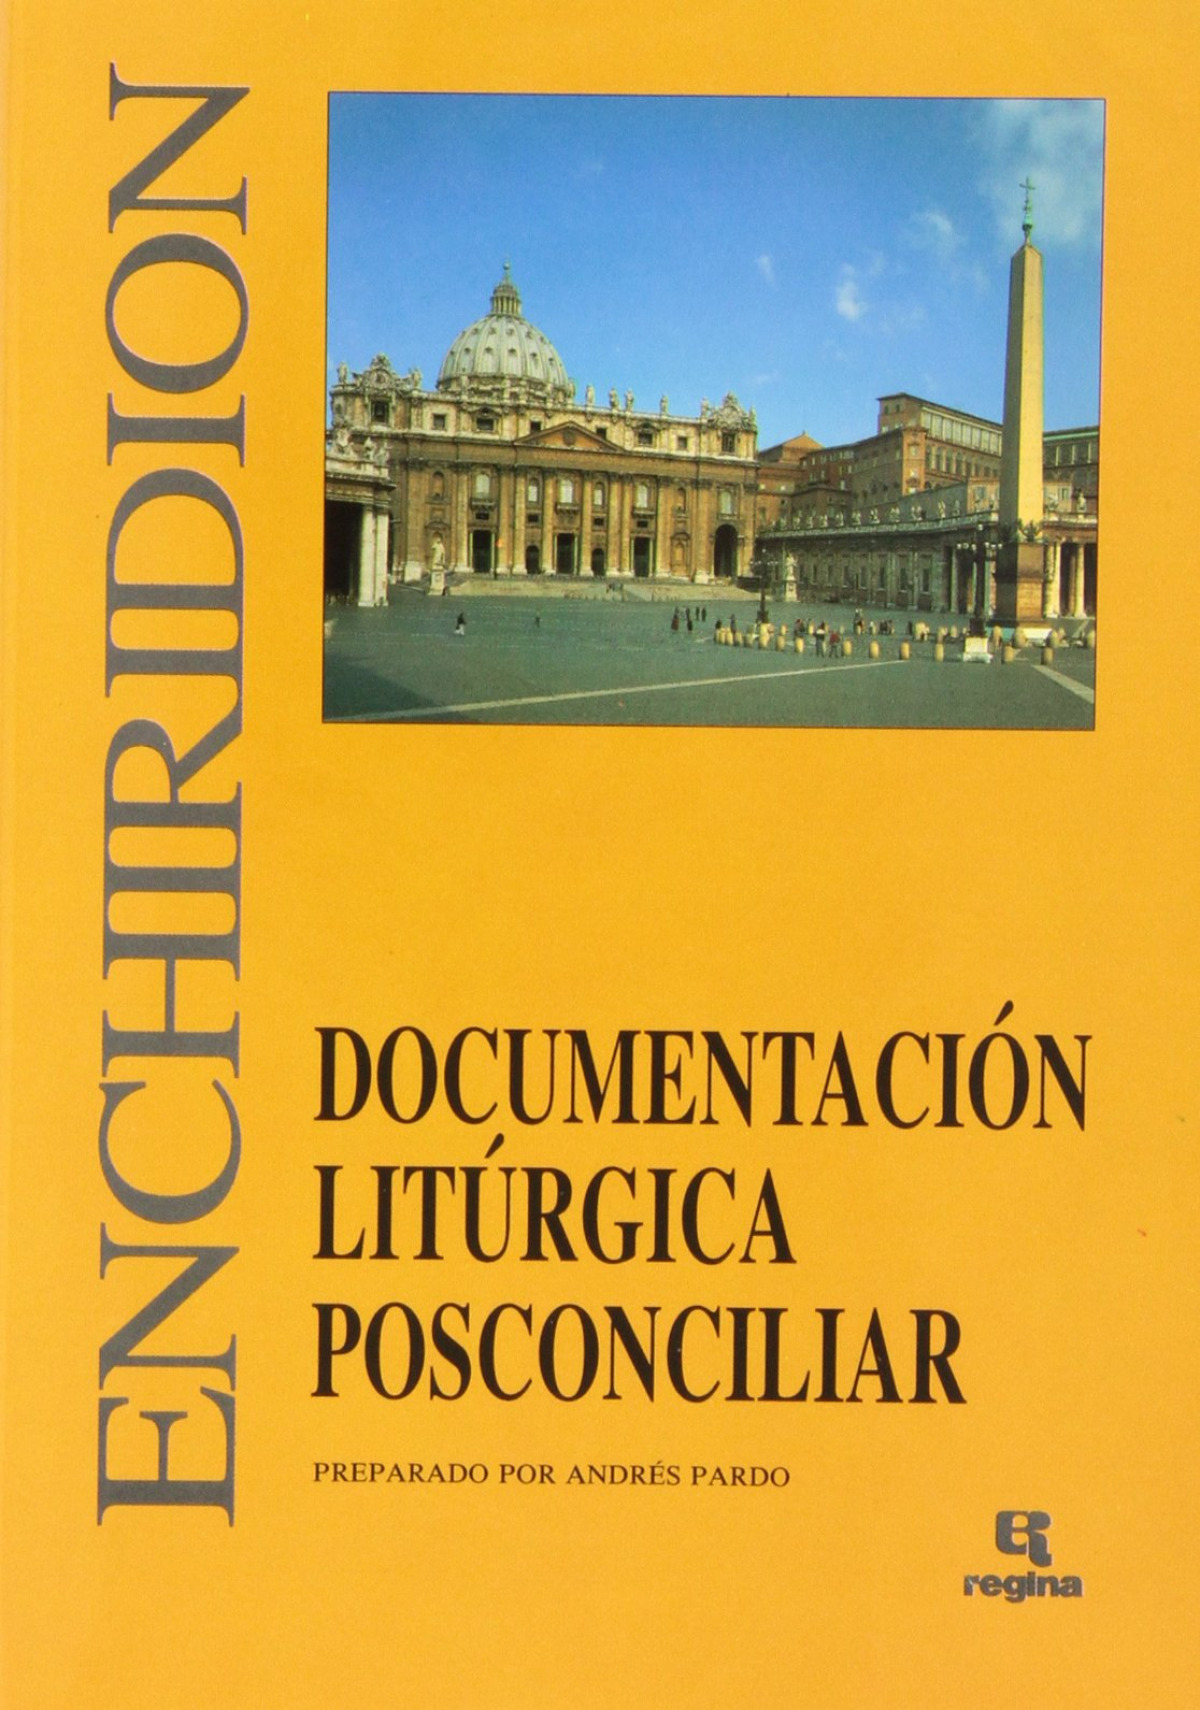 Documentacion liturgica posconciliar - Pardo, Andres                                     Editorial Regina